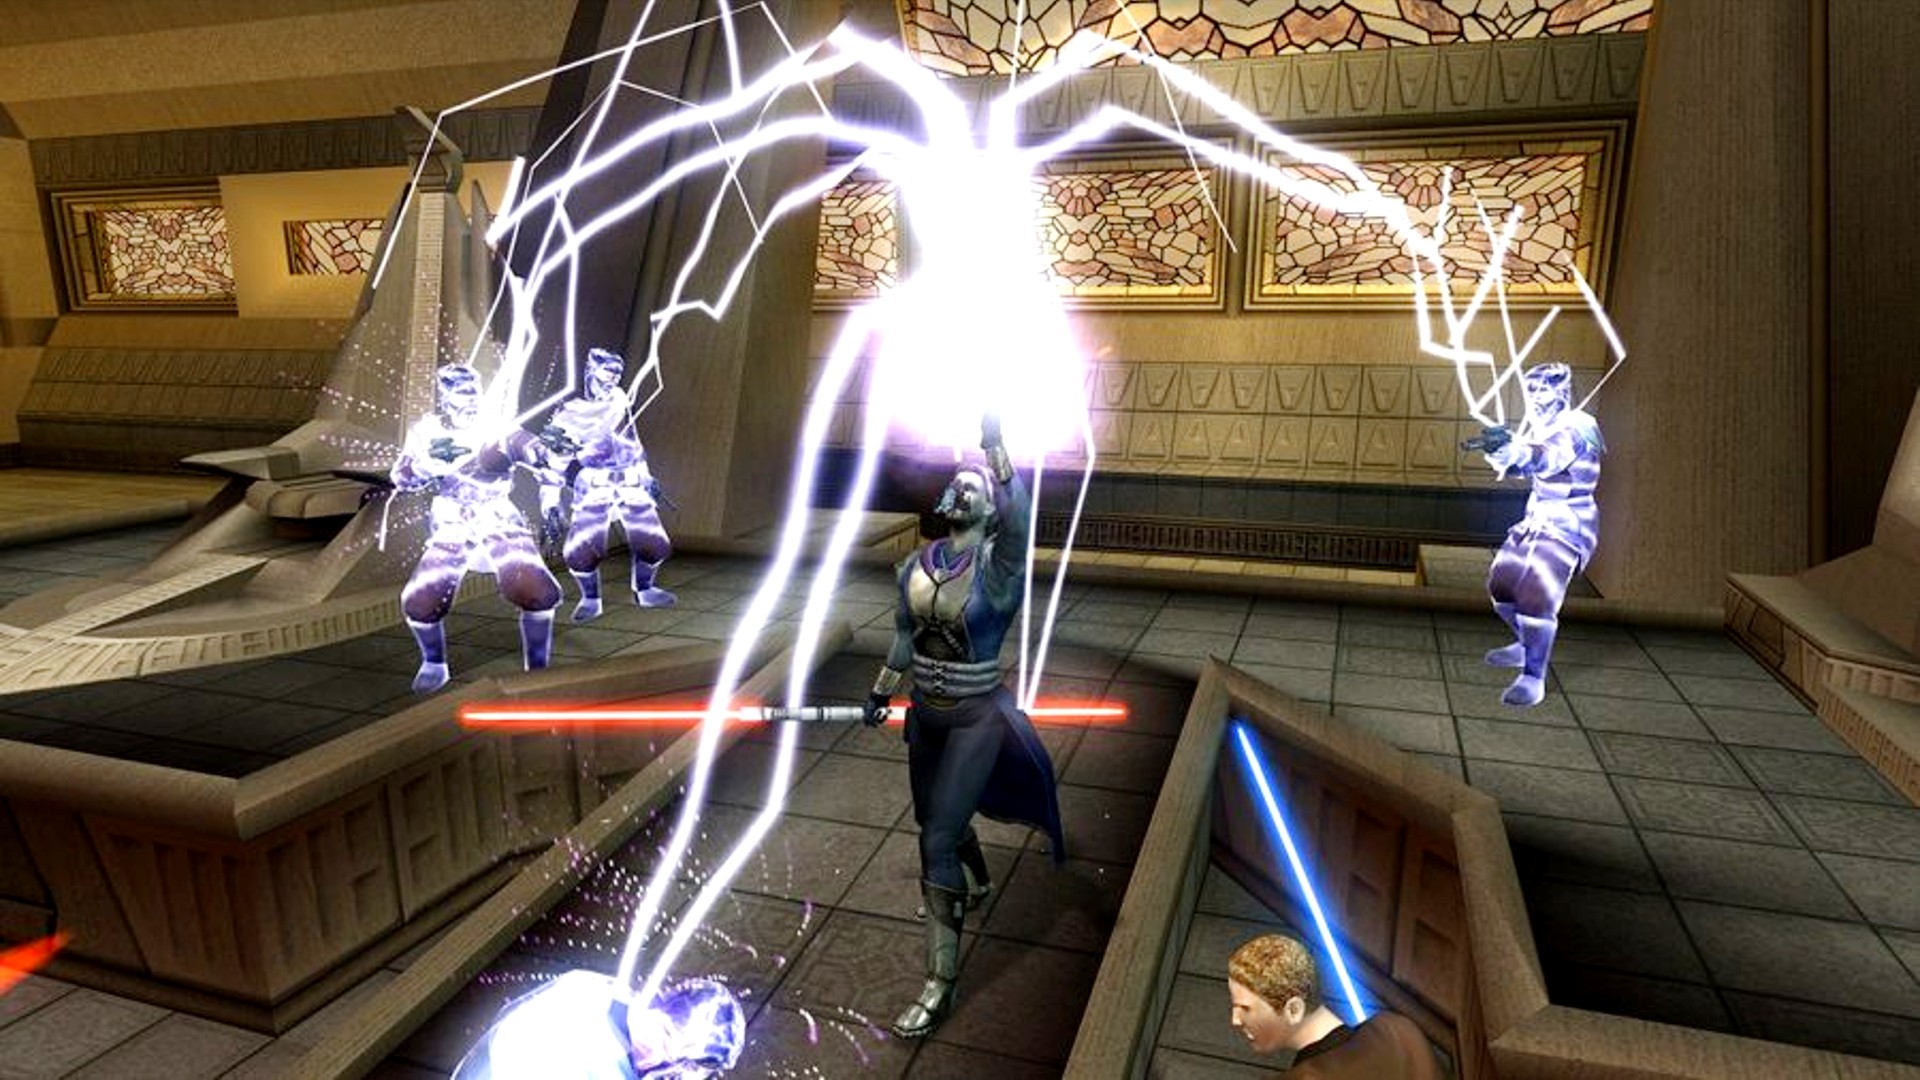 Migliori giochi di ruolo: Star Wars: Knights of the Old Republic 2. L'immagine mostra un Jedi che attacca due nemici con Force Lightning